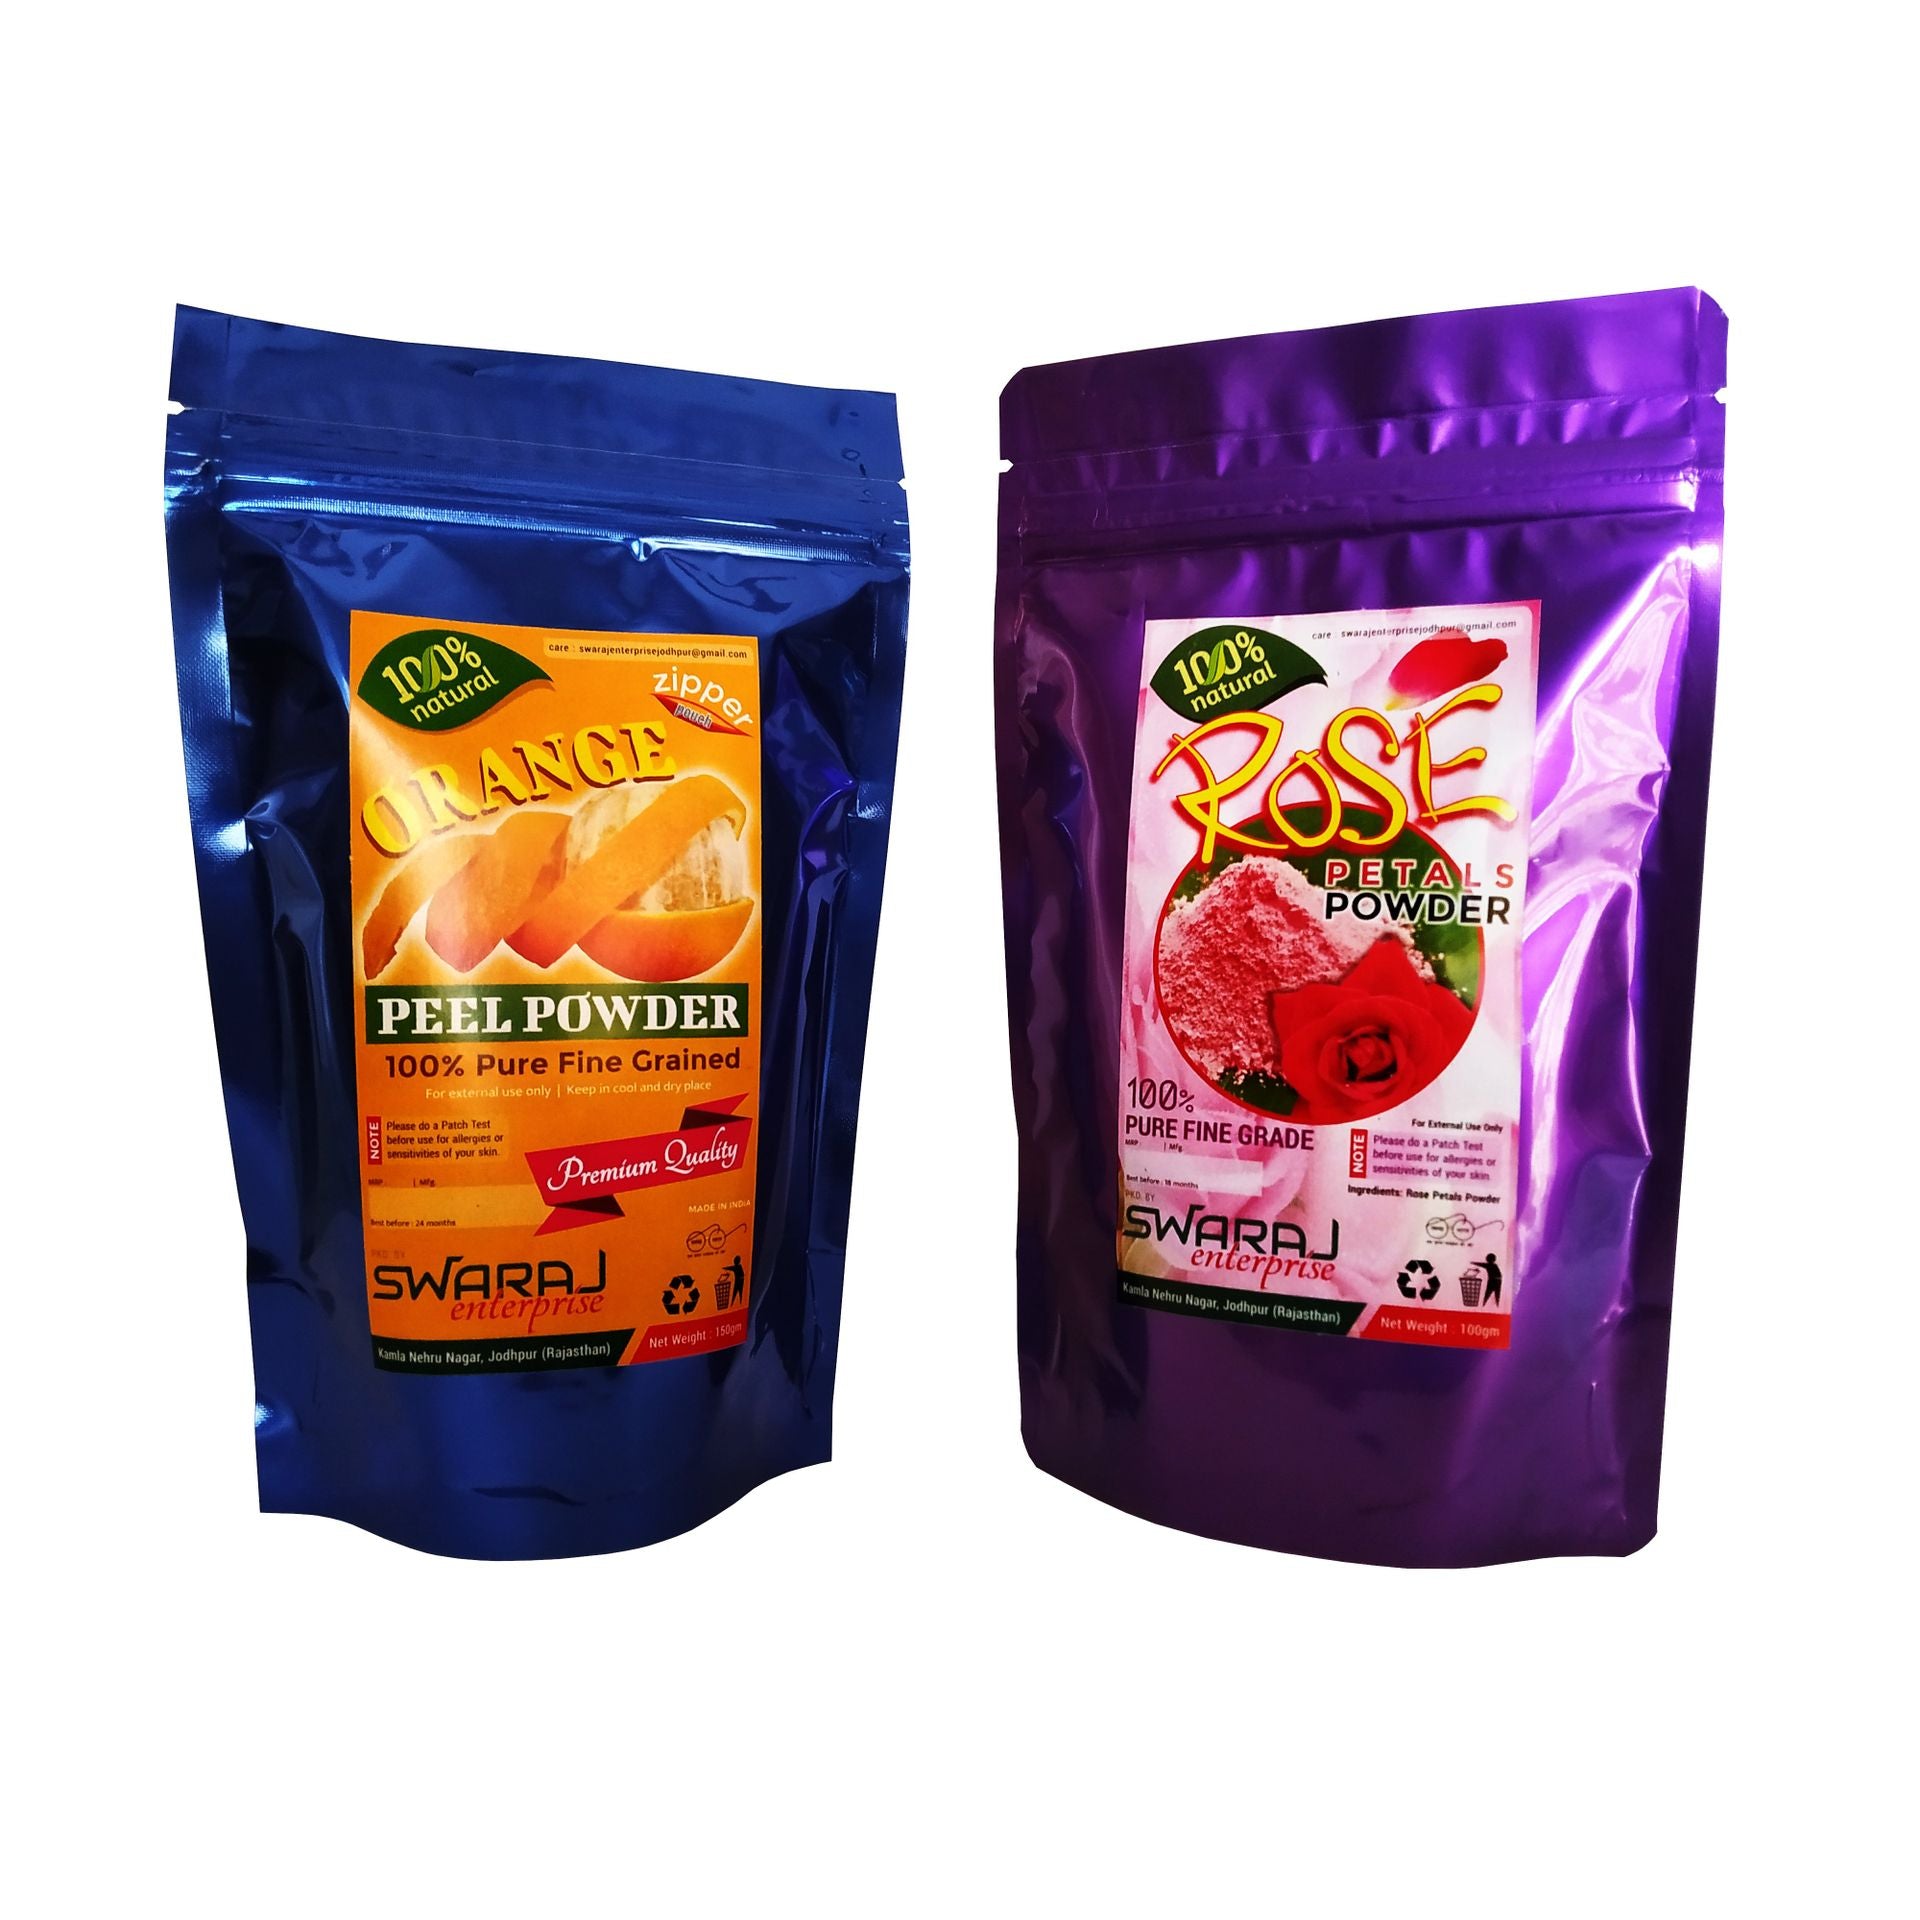 Orange Peel Powder (150gm) And Rose Petal Powder (100gm) - Combo Pack - hfnl!fe